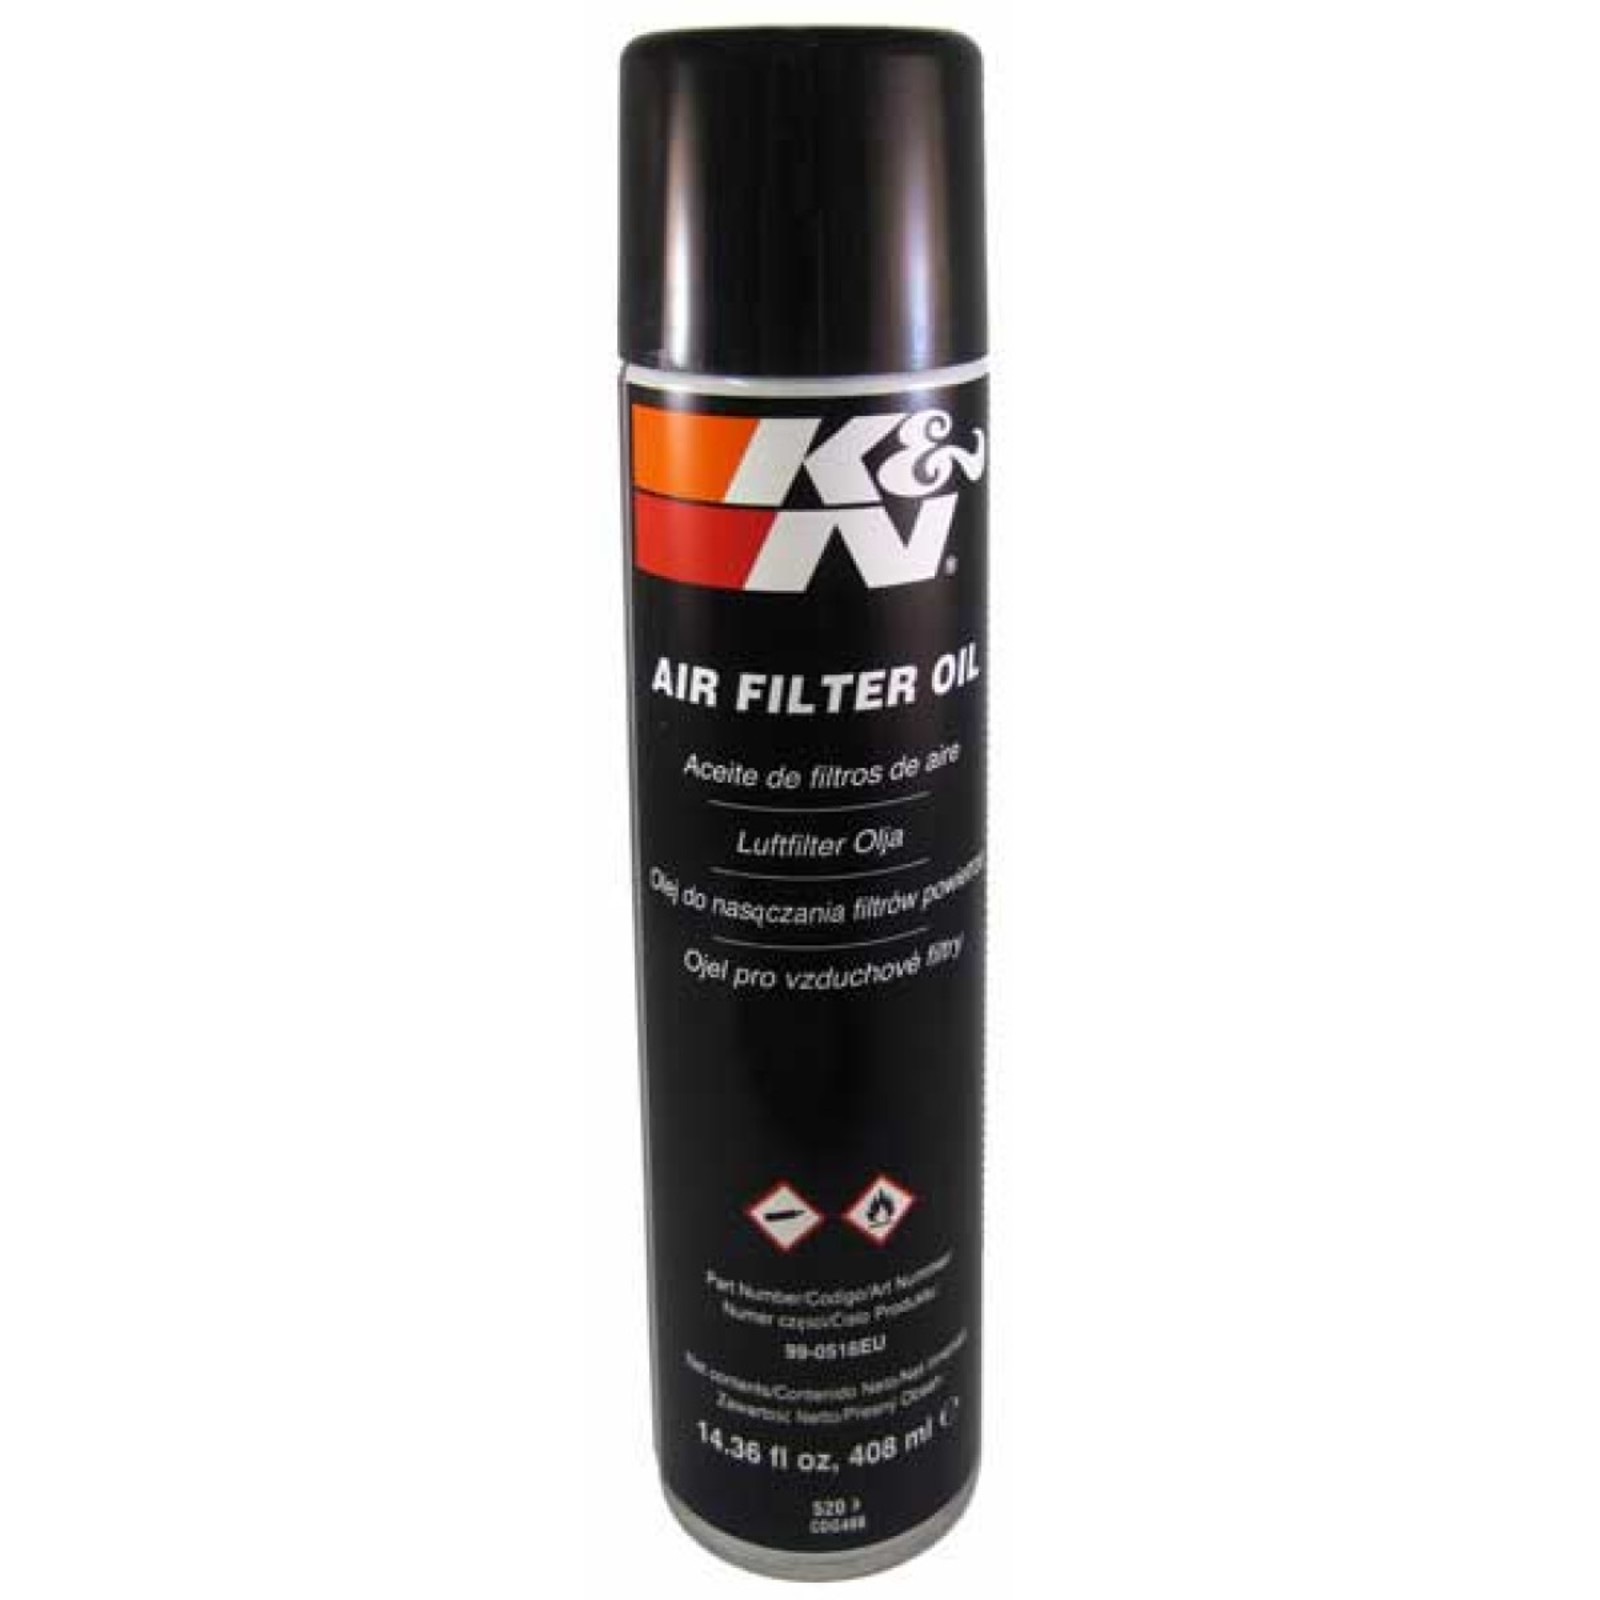 K&N Air Filter Oil 408ml Luftfilteröl